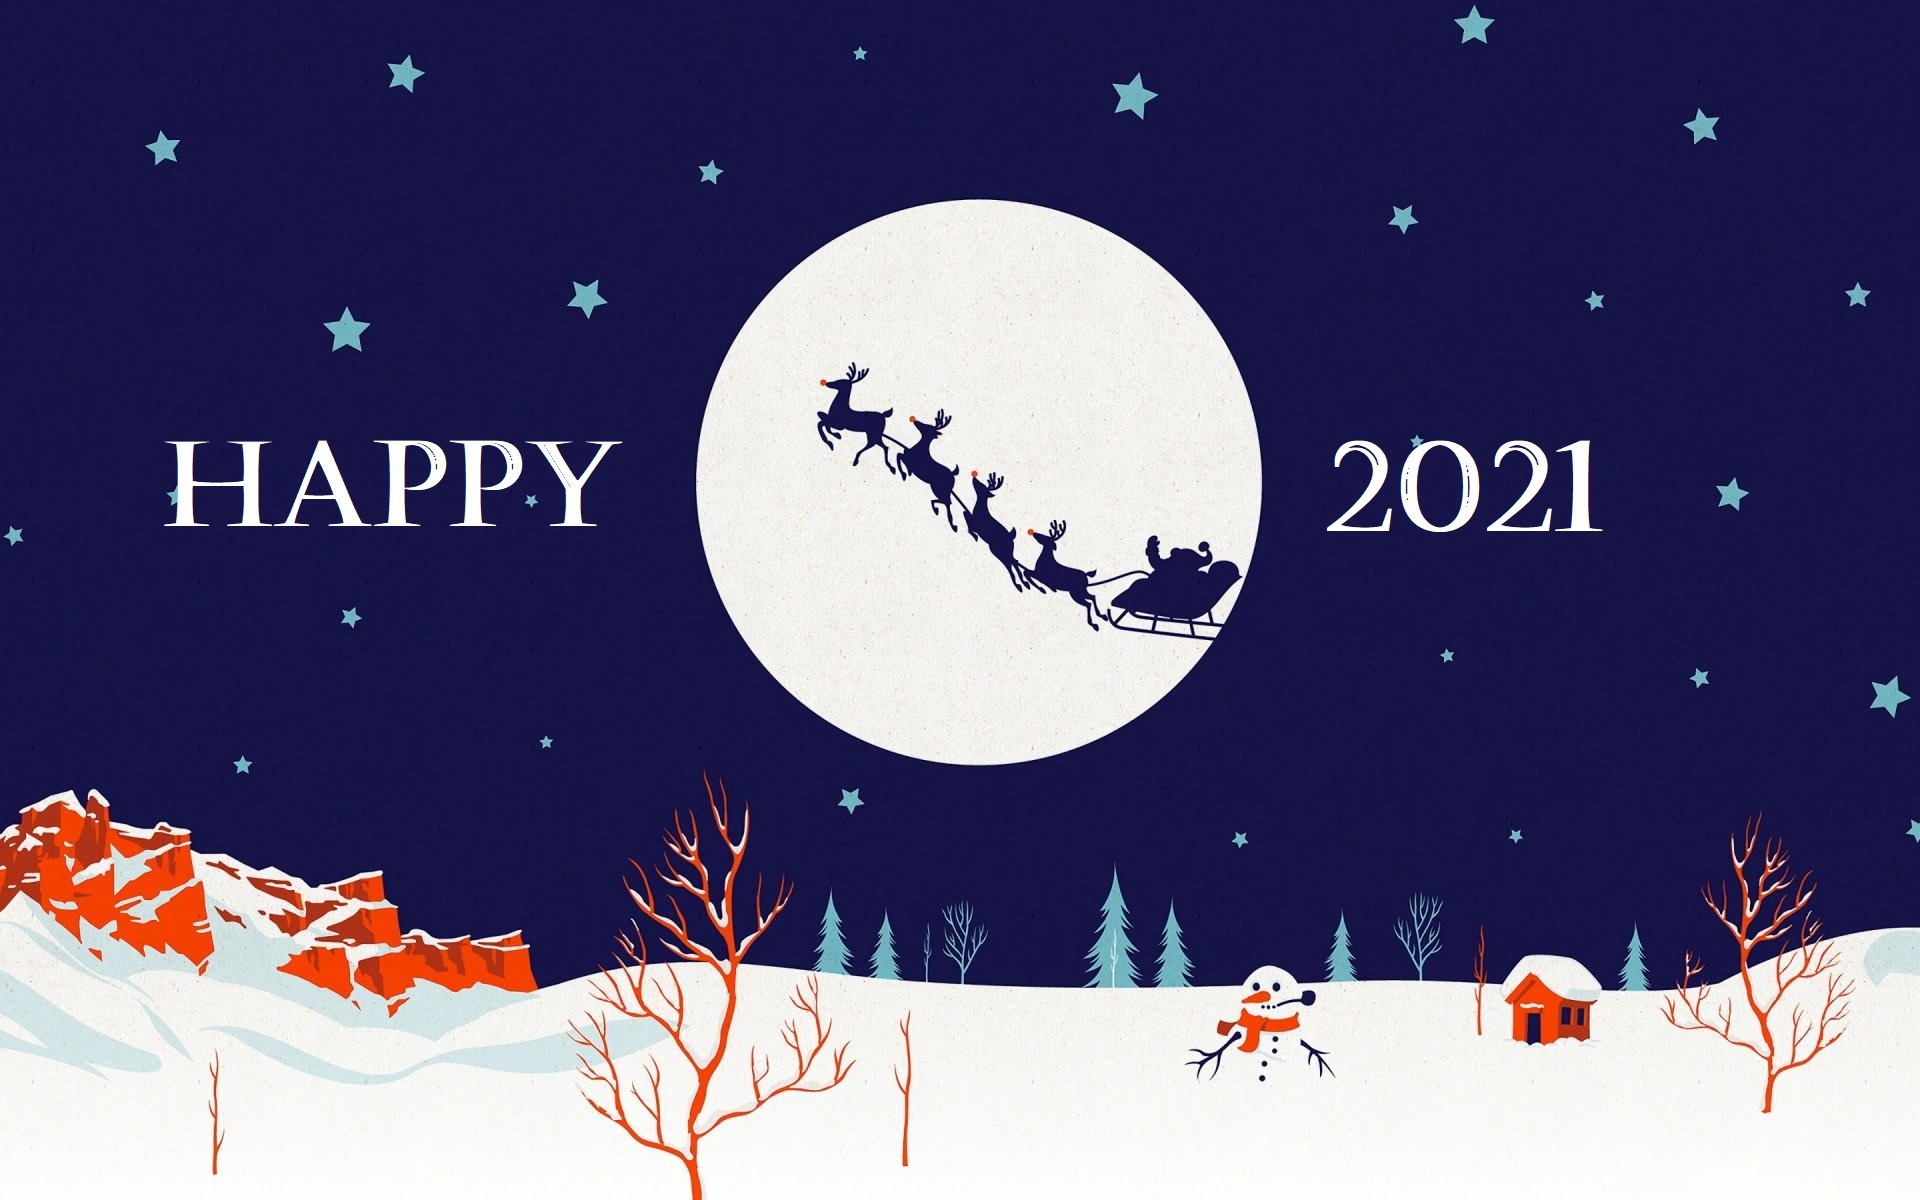 sled, holiday, new year 2021, santa images